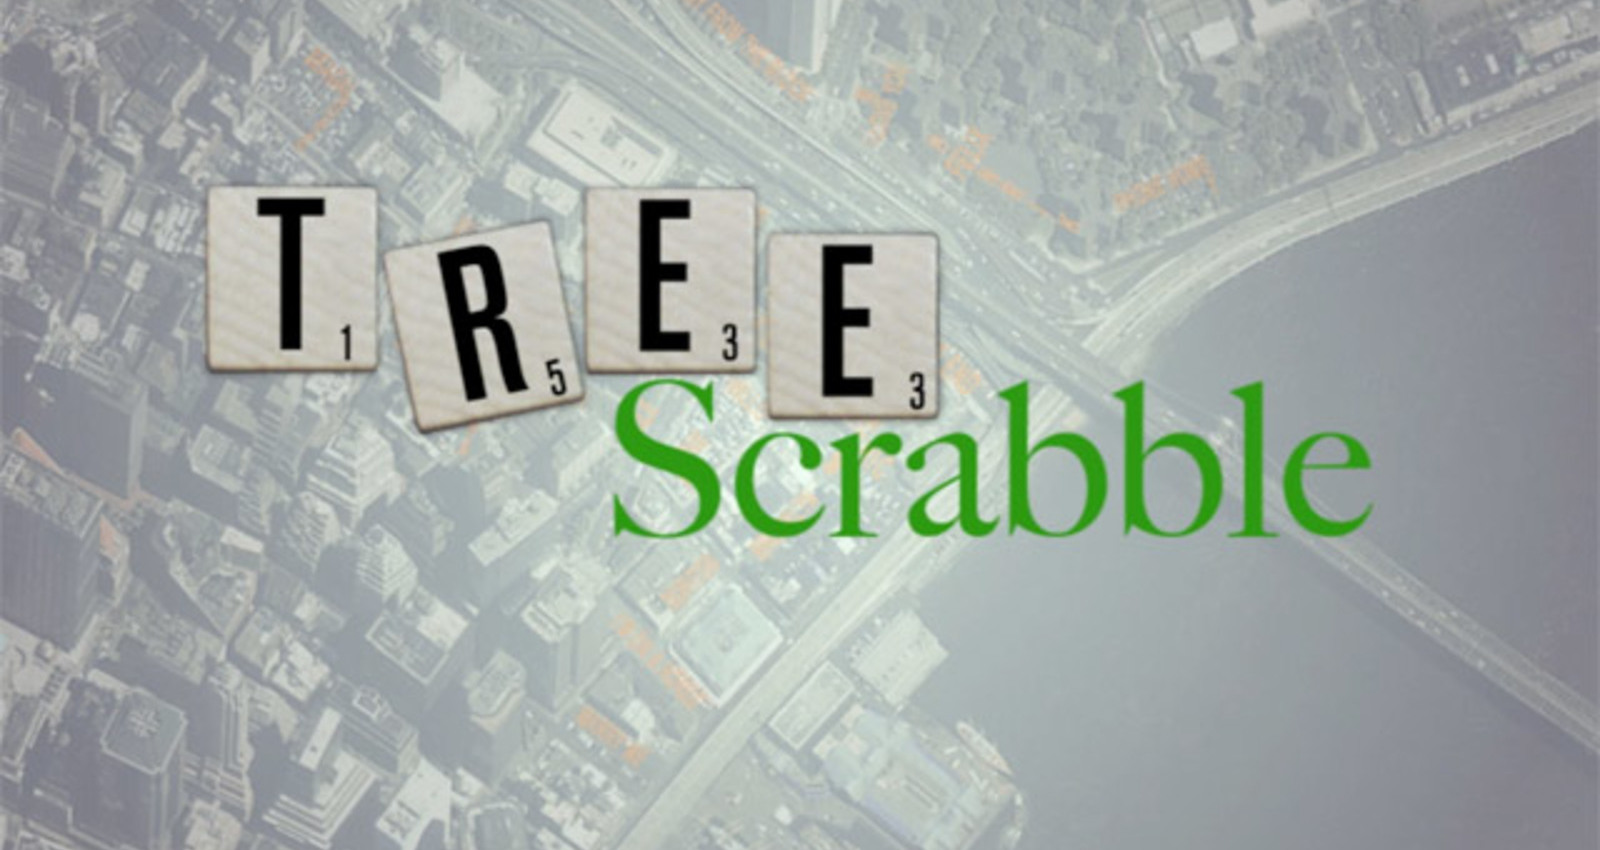 Tree Scrabble